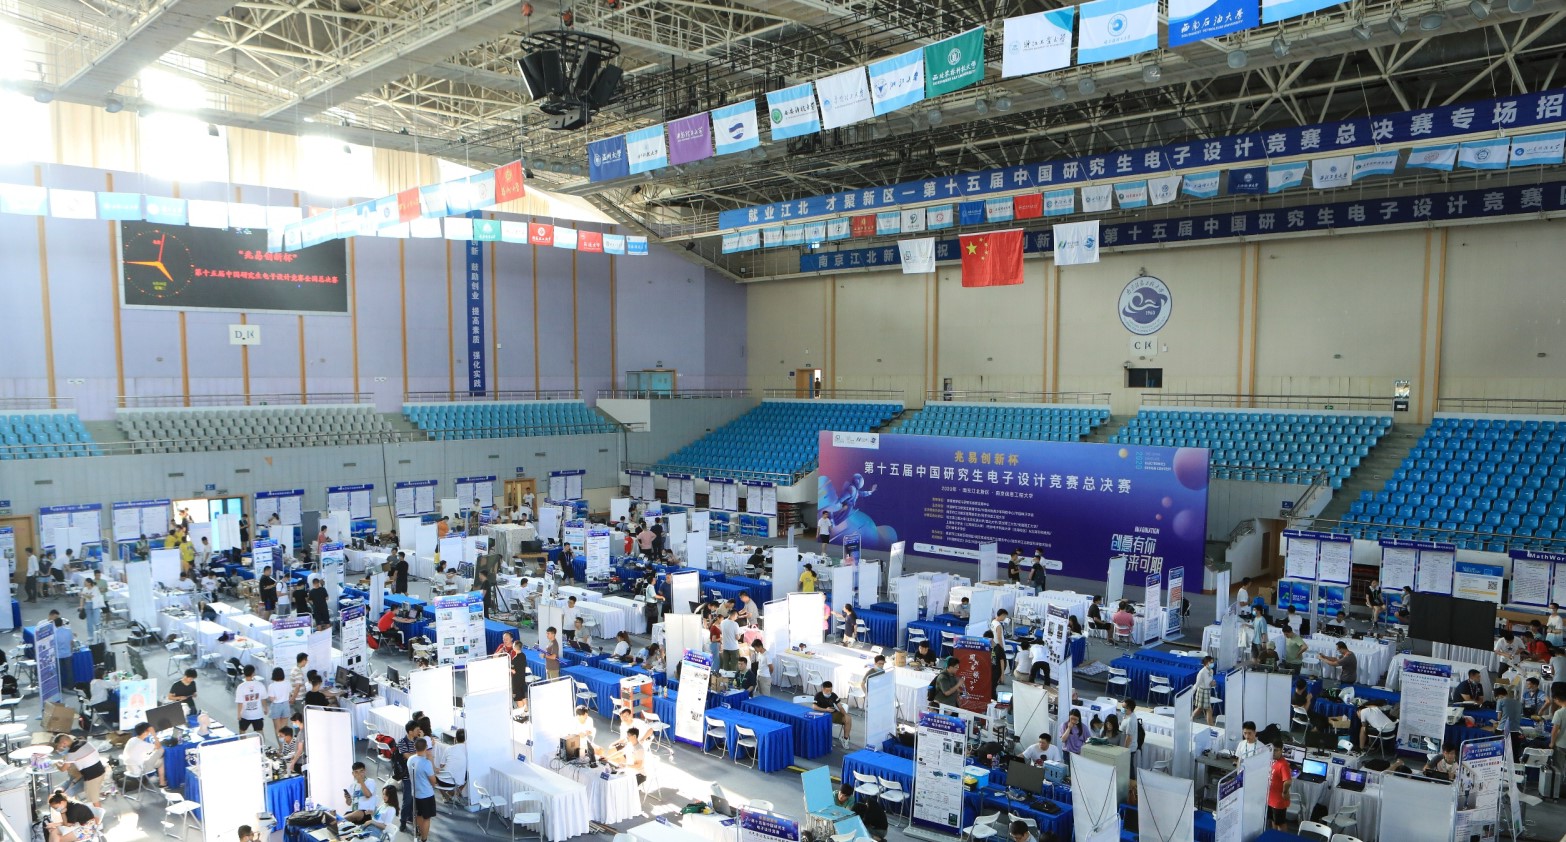 2020湖南大学在第十五届中国研究生电子设计竞赛 全国总决赛中斩获佳绩